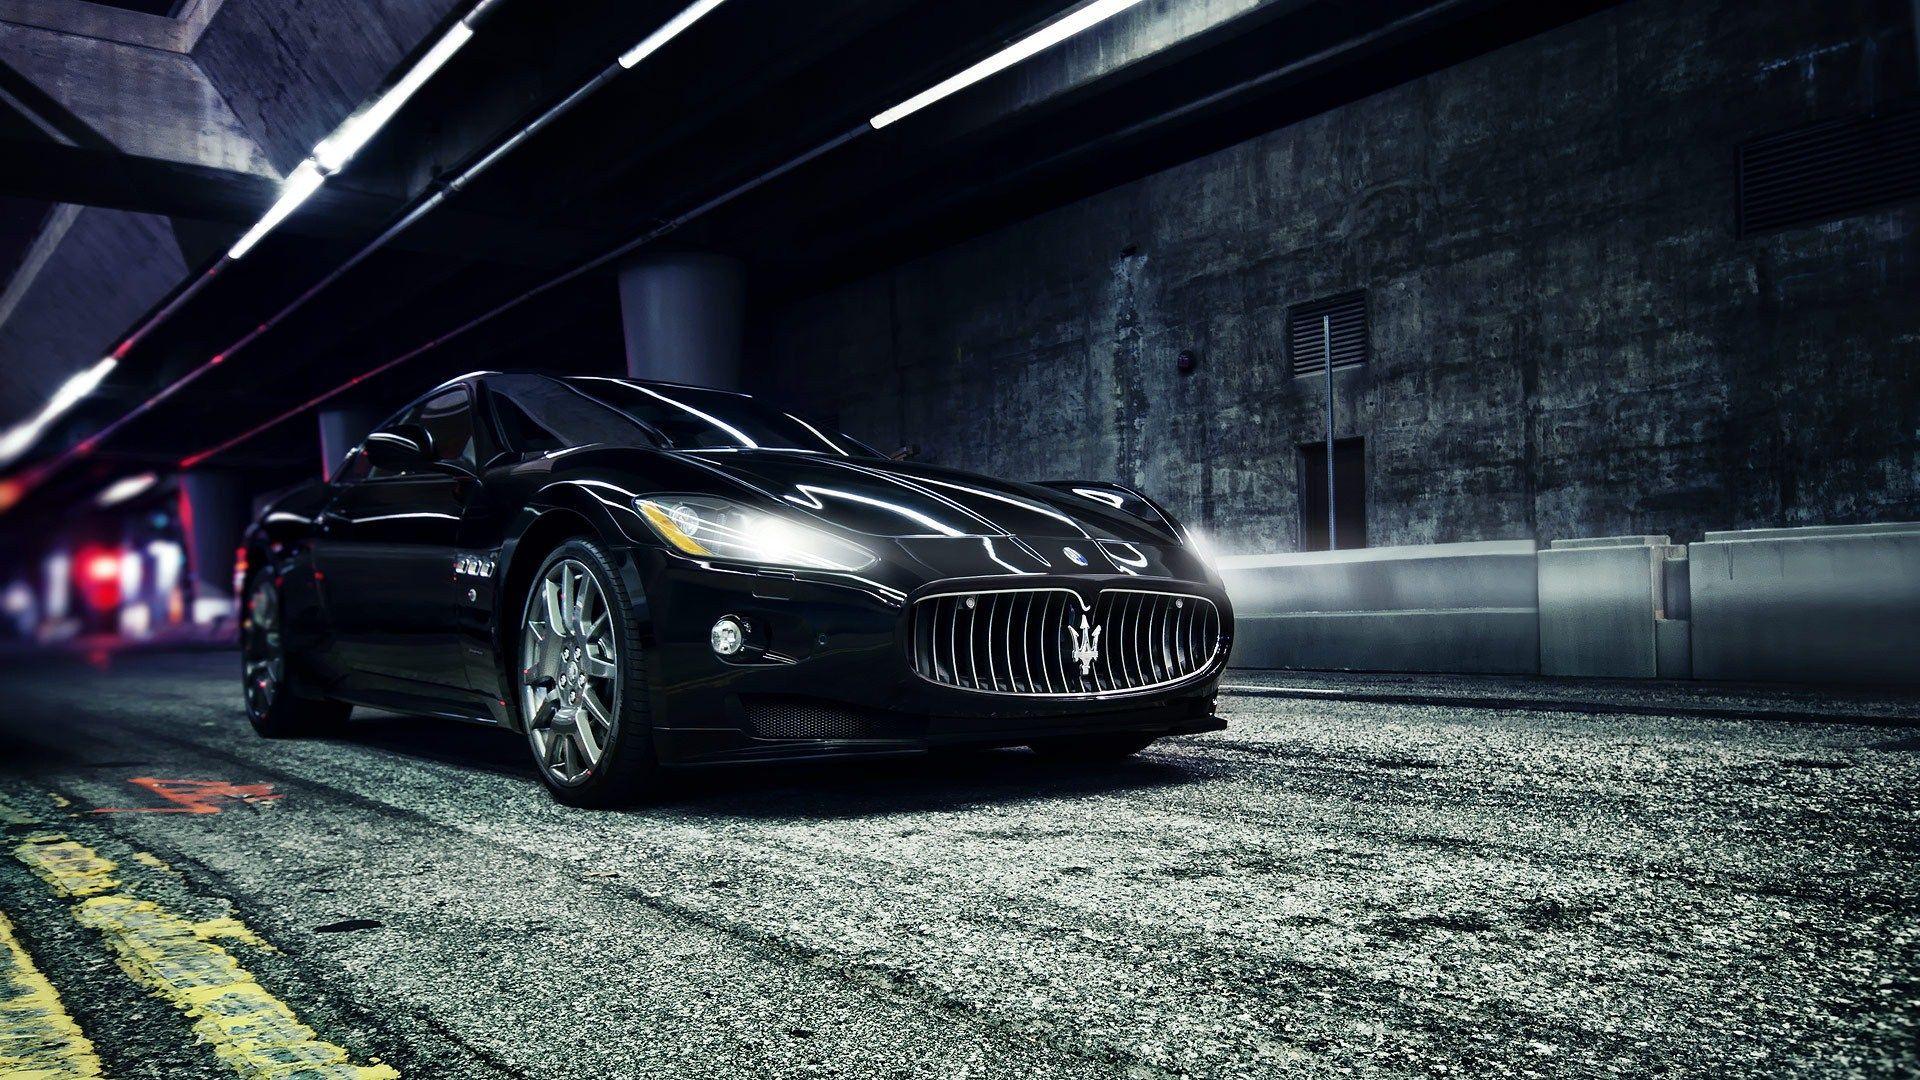 Facts about the Maserati Granturismo